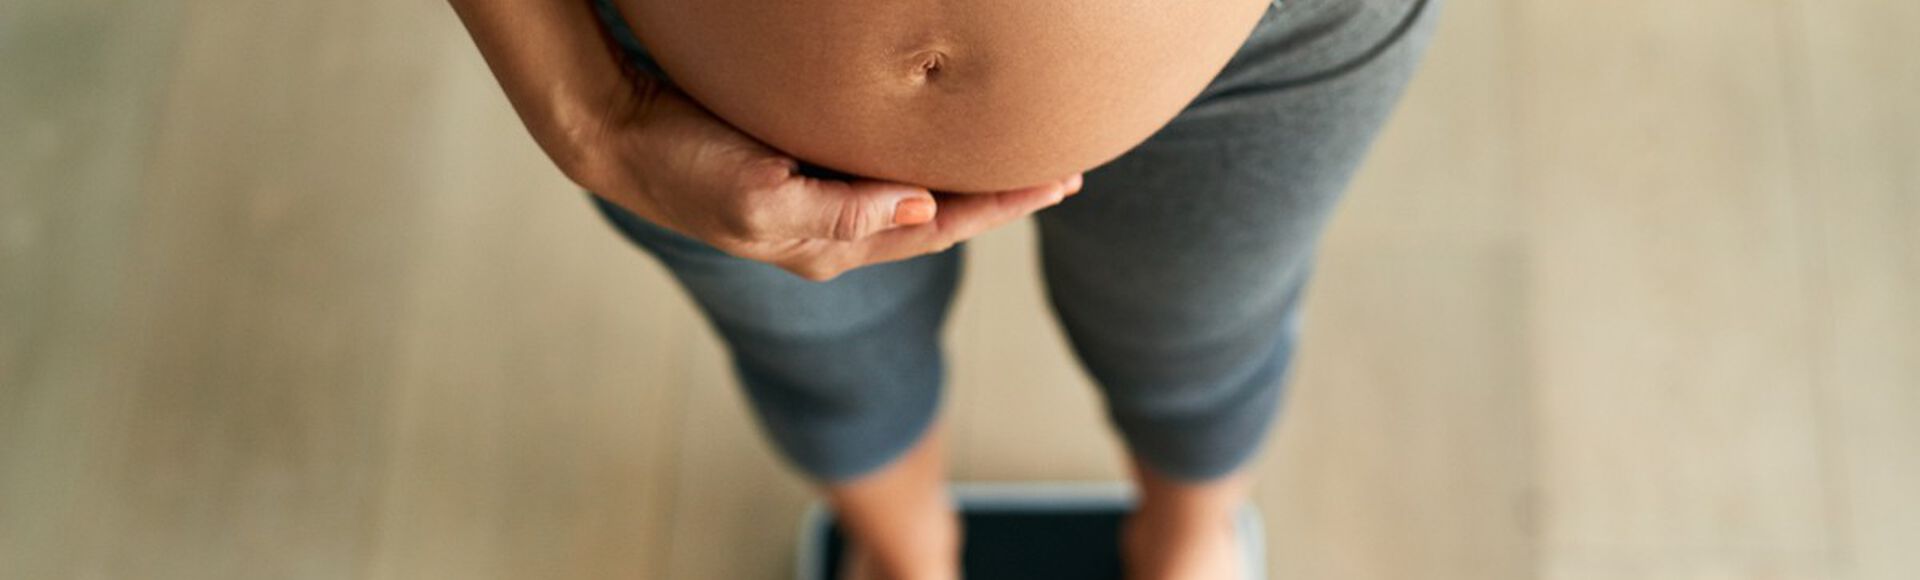 Mulher grávida com barriga em evidência sobre balança